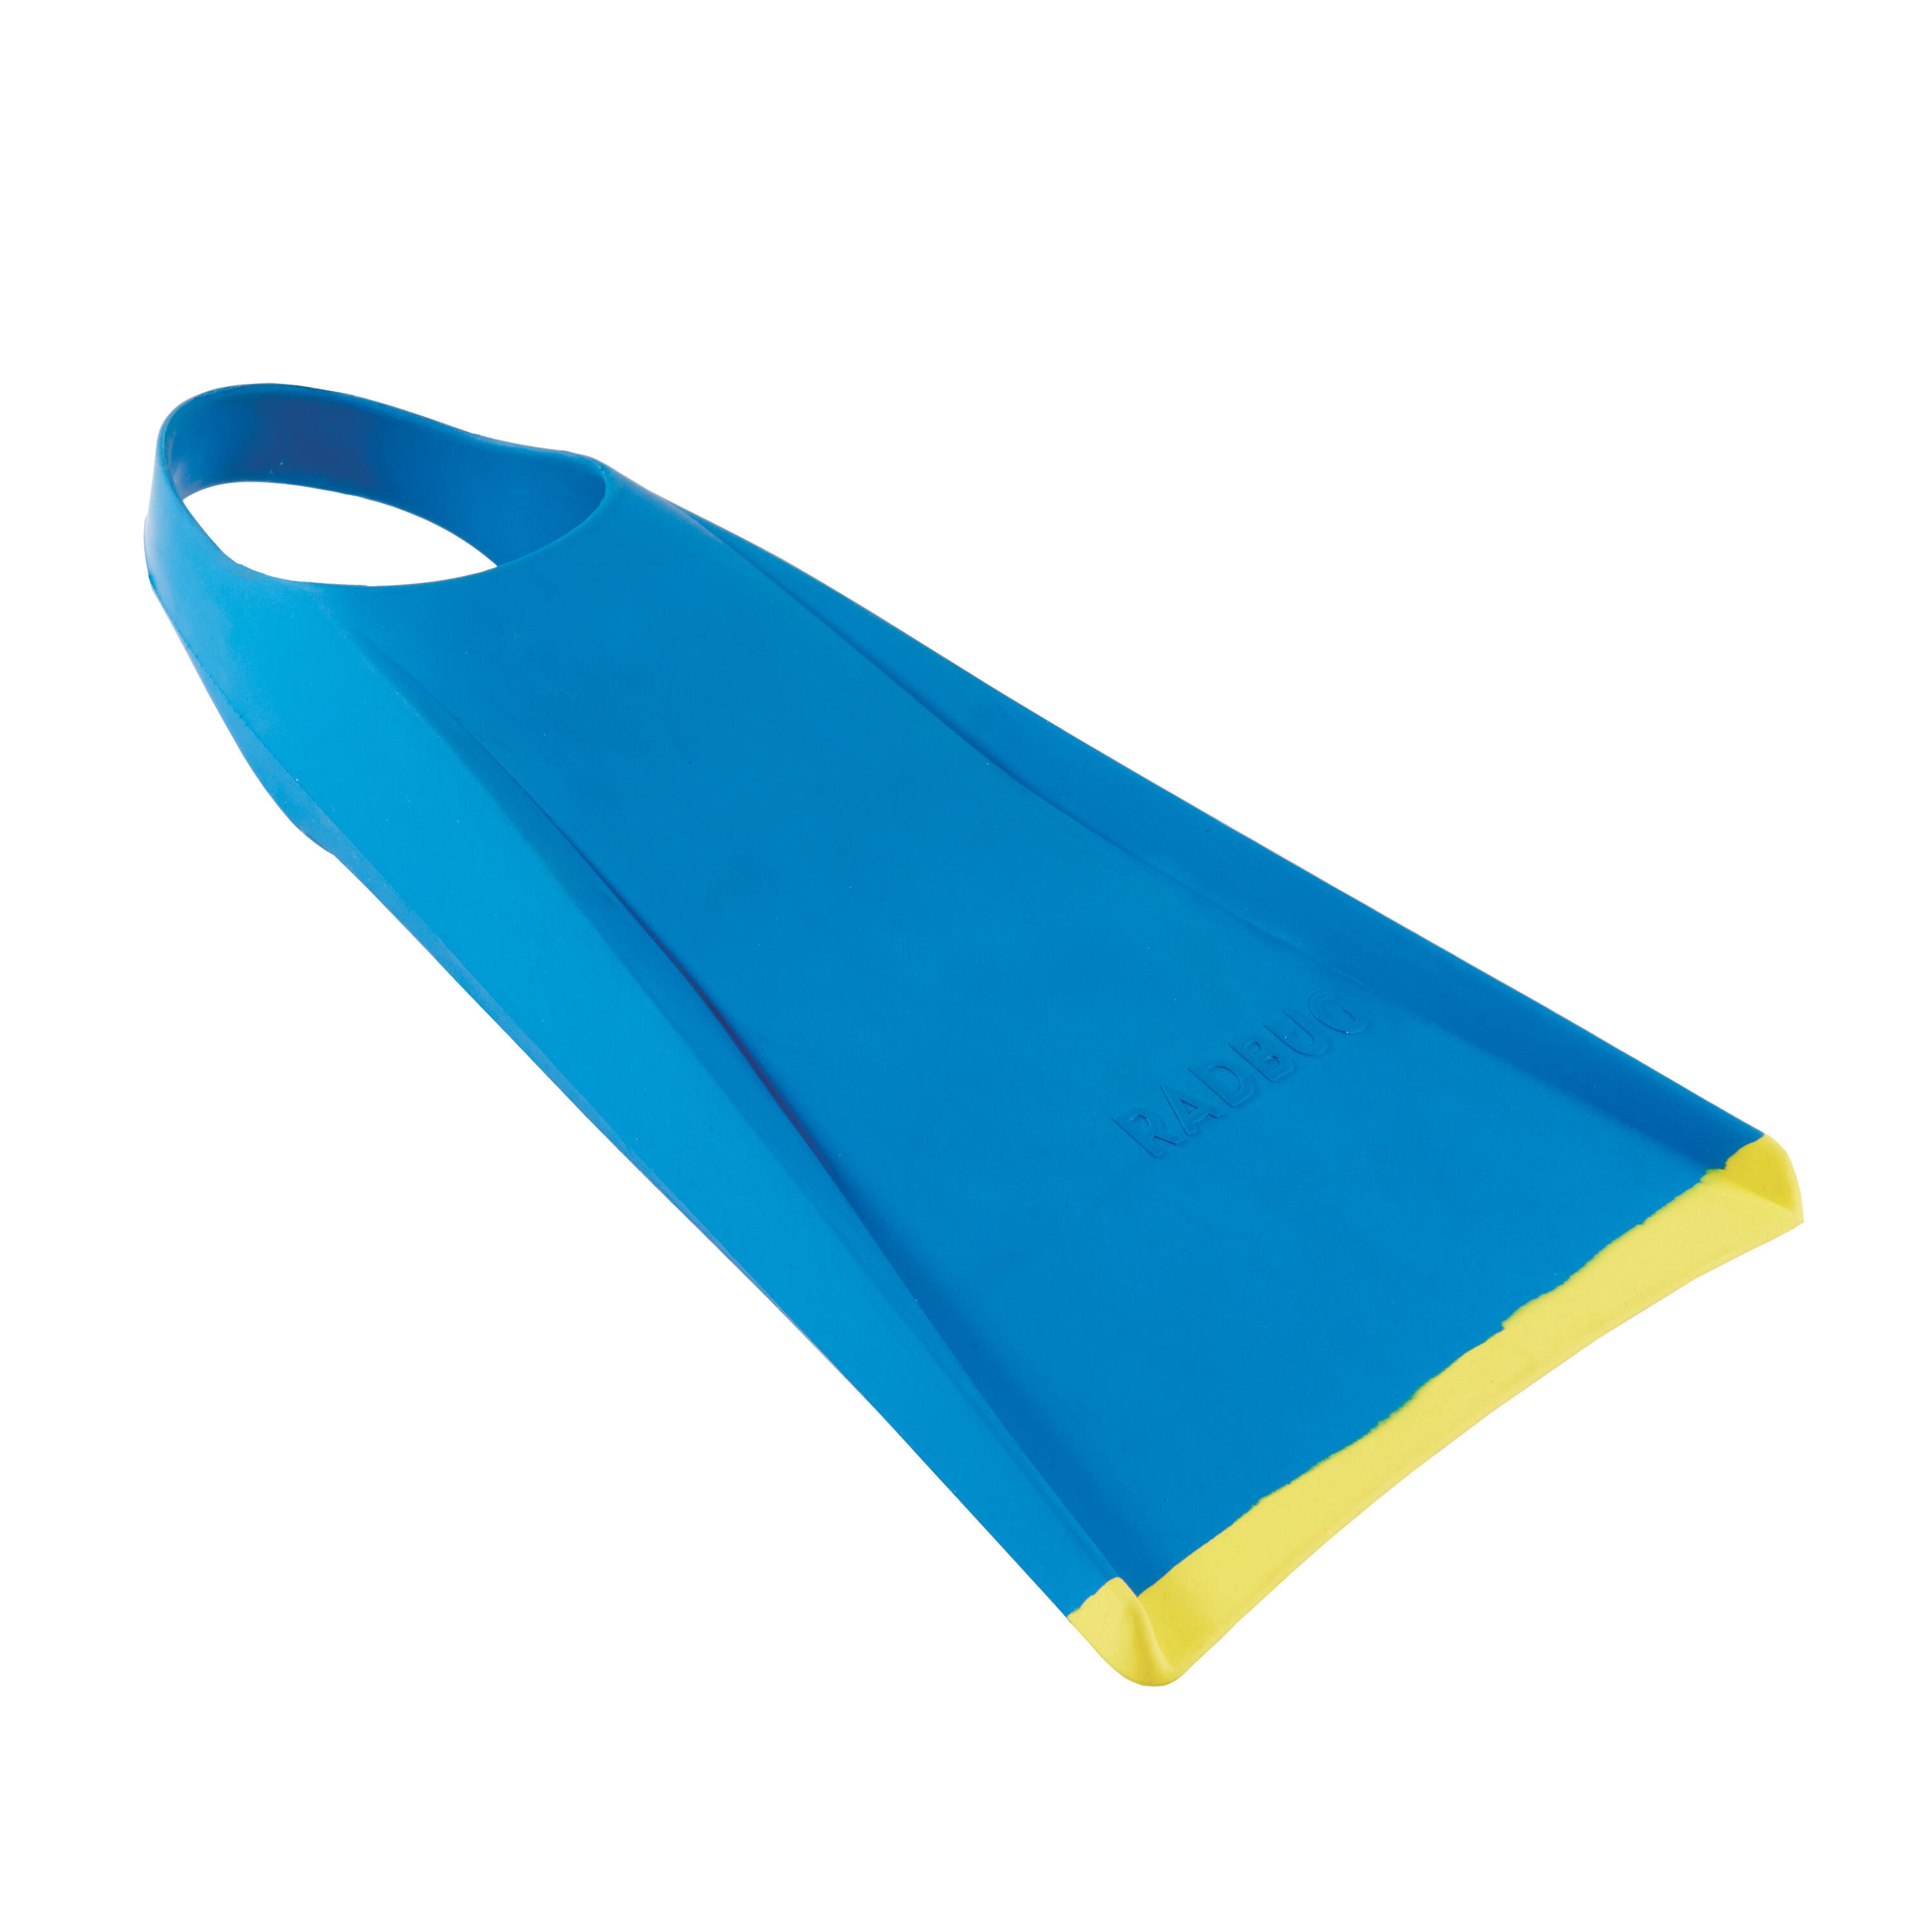 Ласты Bodyboard Ecodesign 100 синий/желтый RADBUG, бирюзово-синий